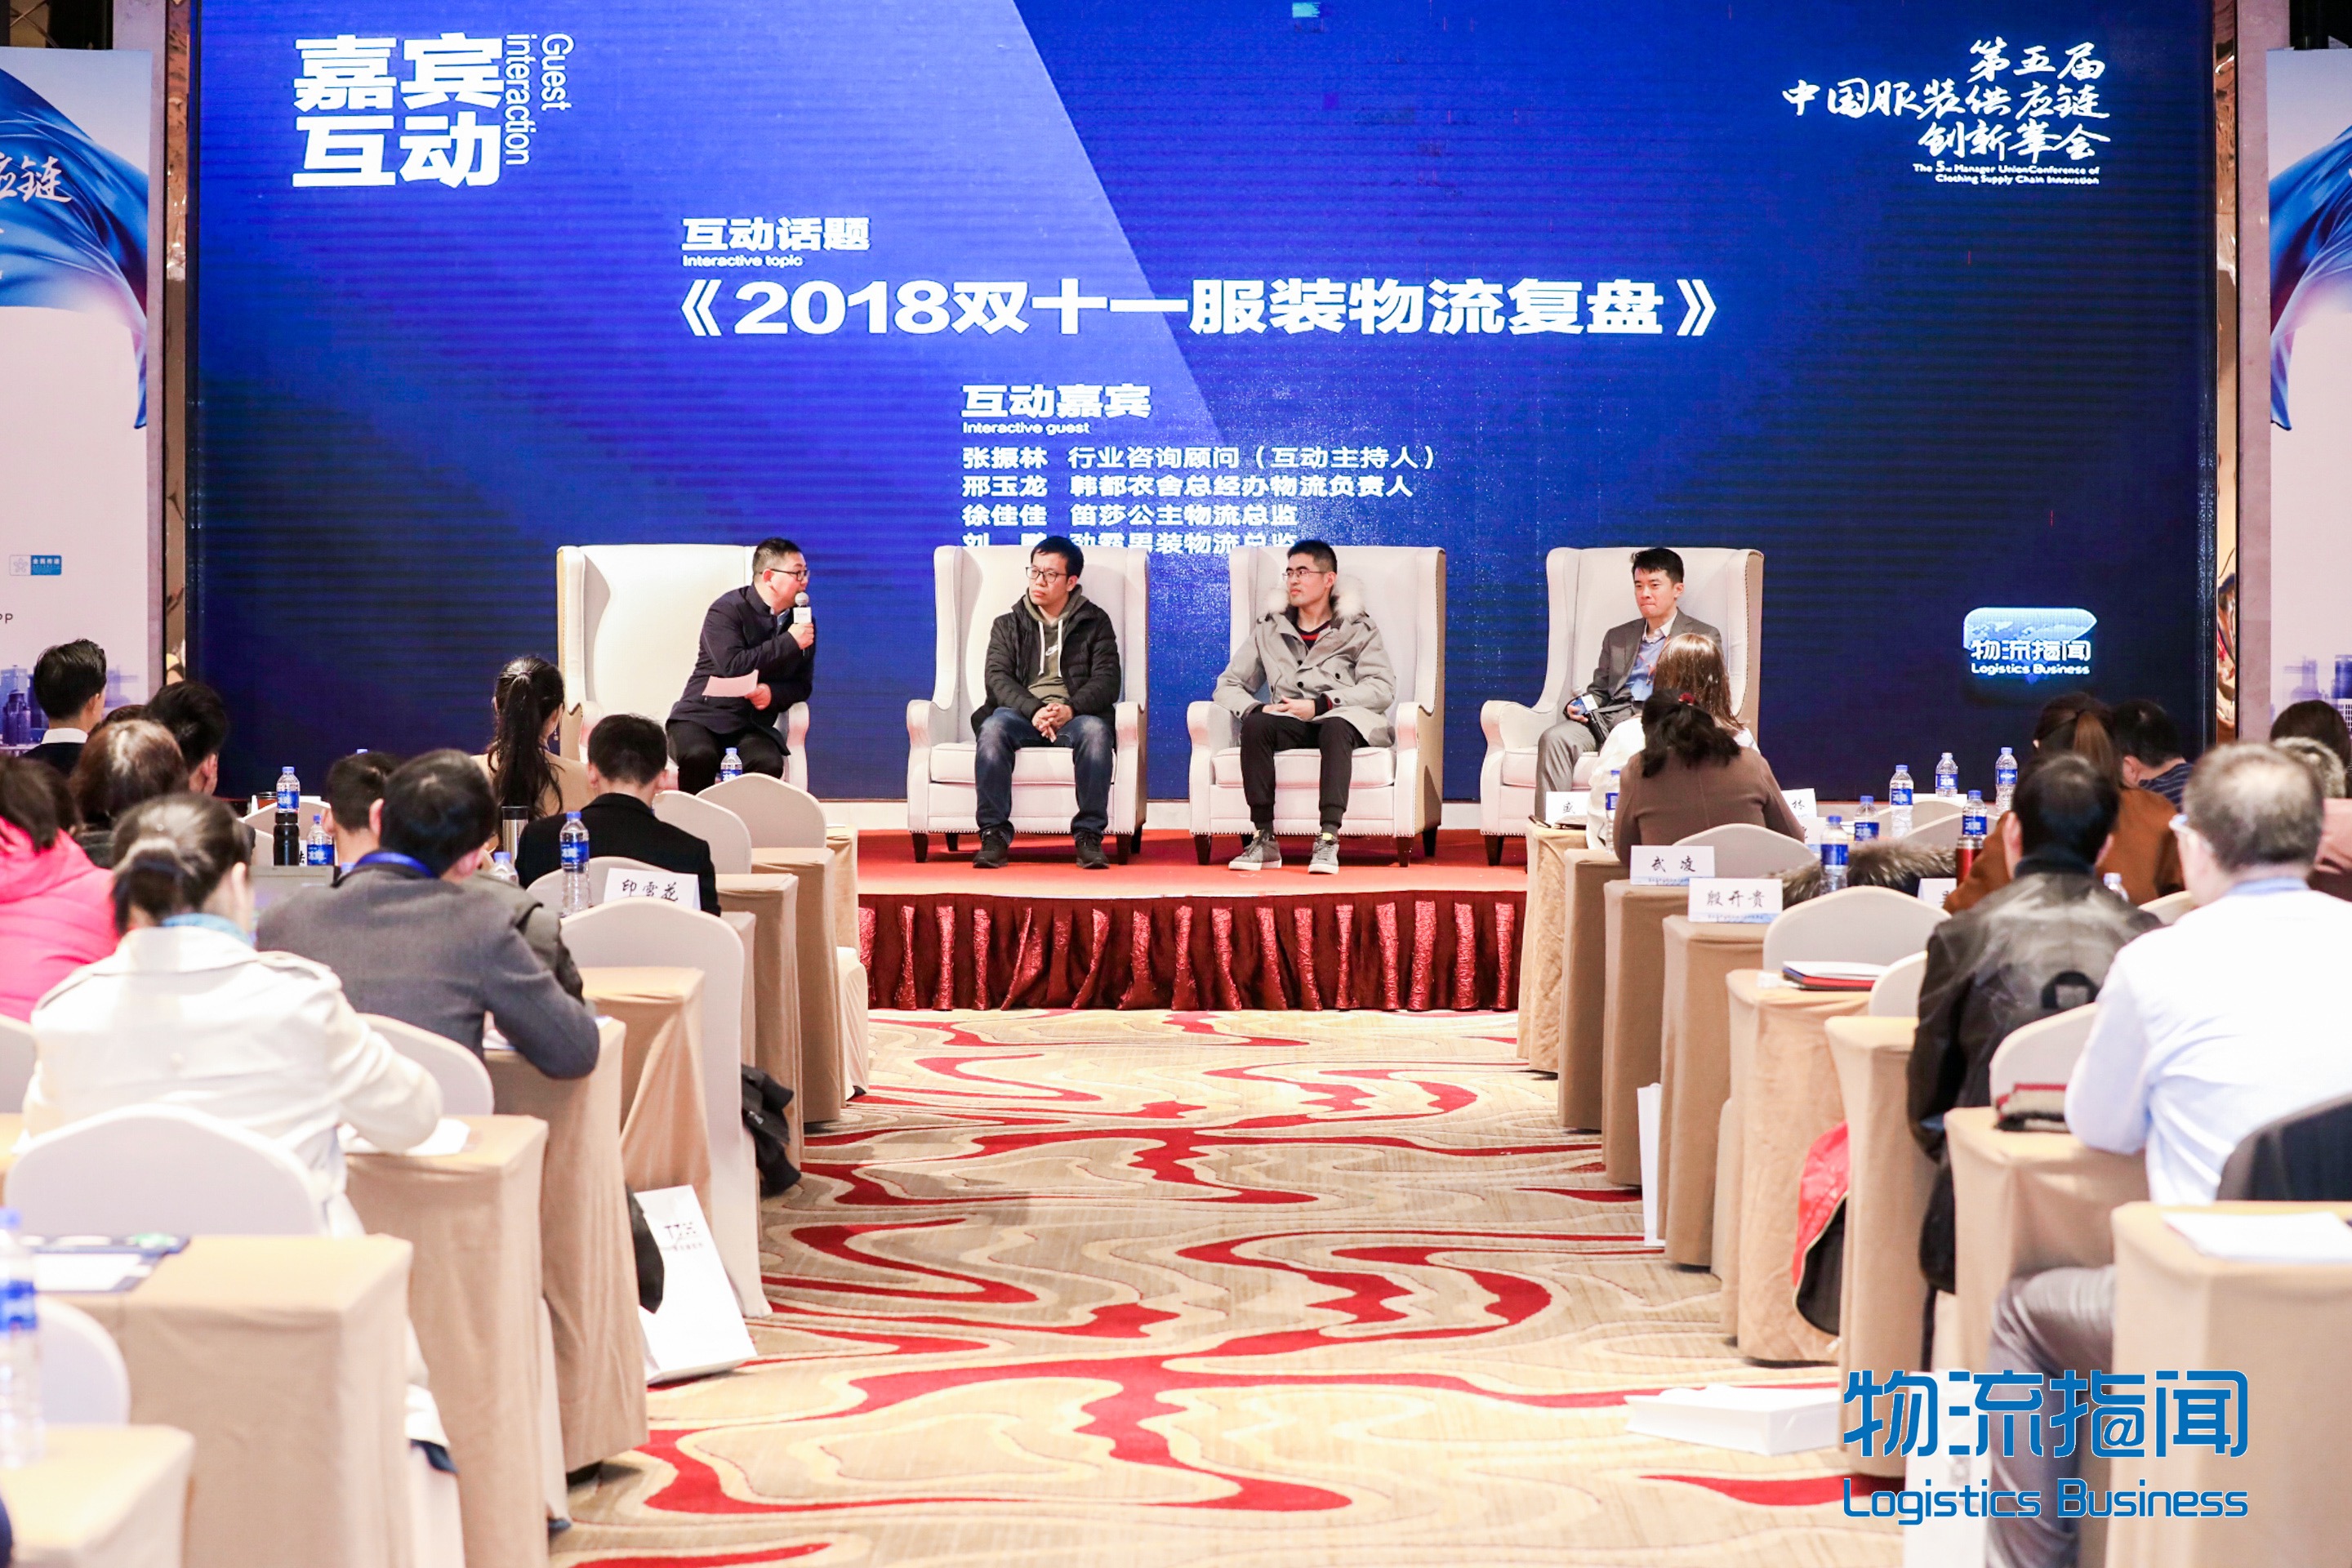 新闻 | 宝开执行总裁 张振林受邀出席第五届中国服装供应链创新峰会